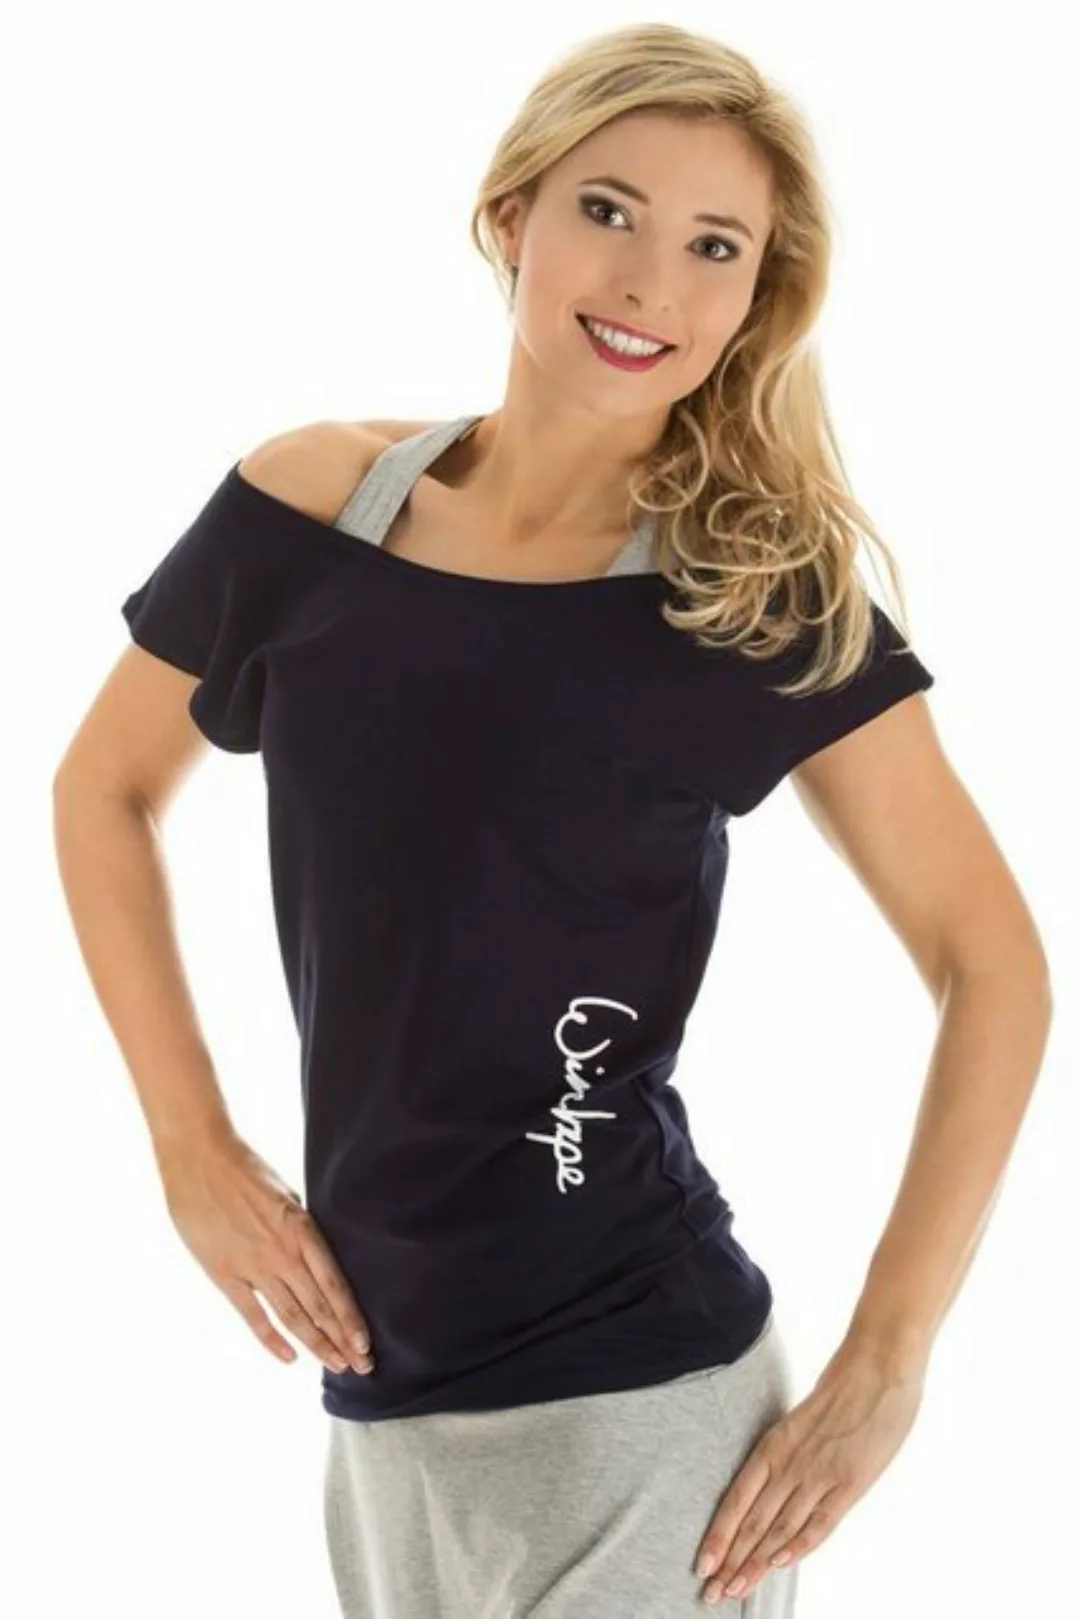 Winshape Oversize-Shirt "WTR12", Dance-Style günstig online kaufen